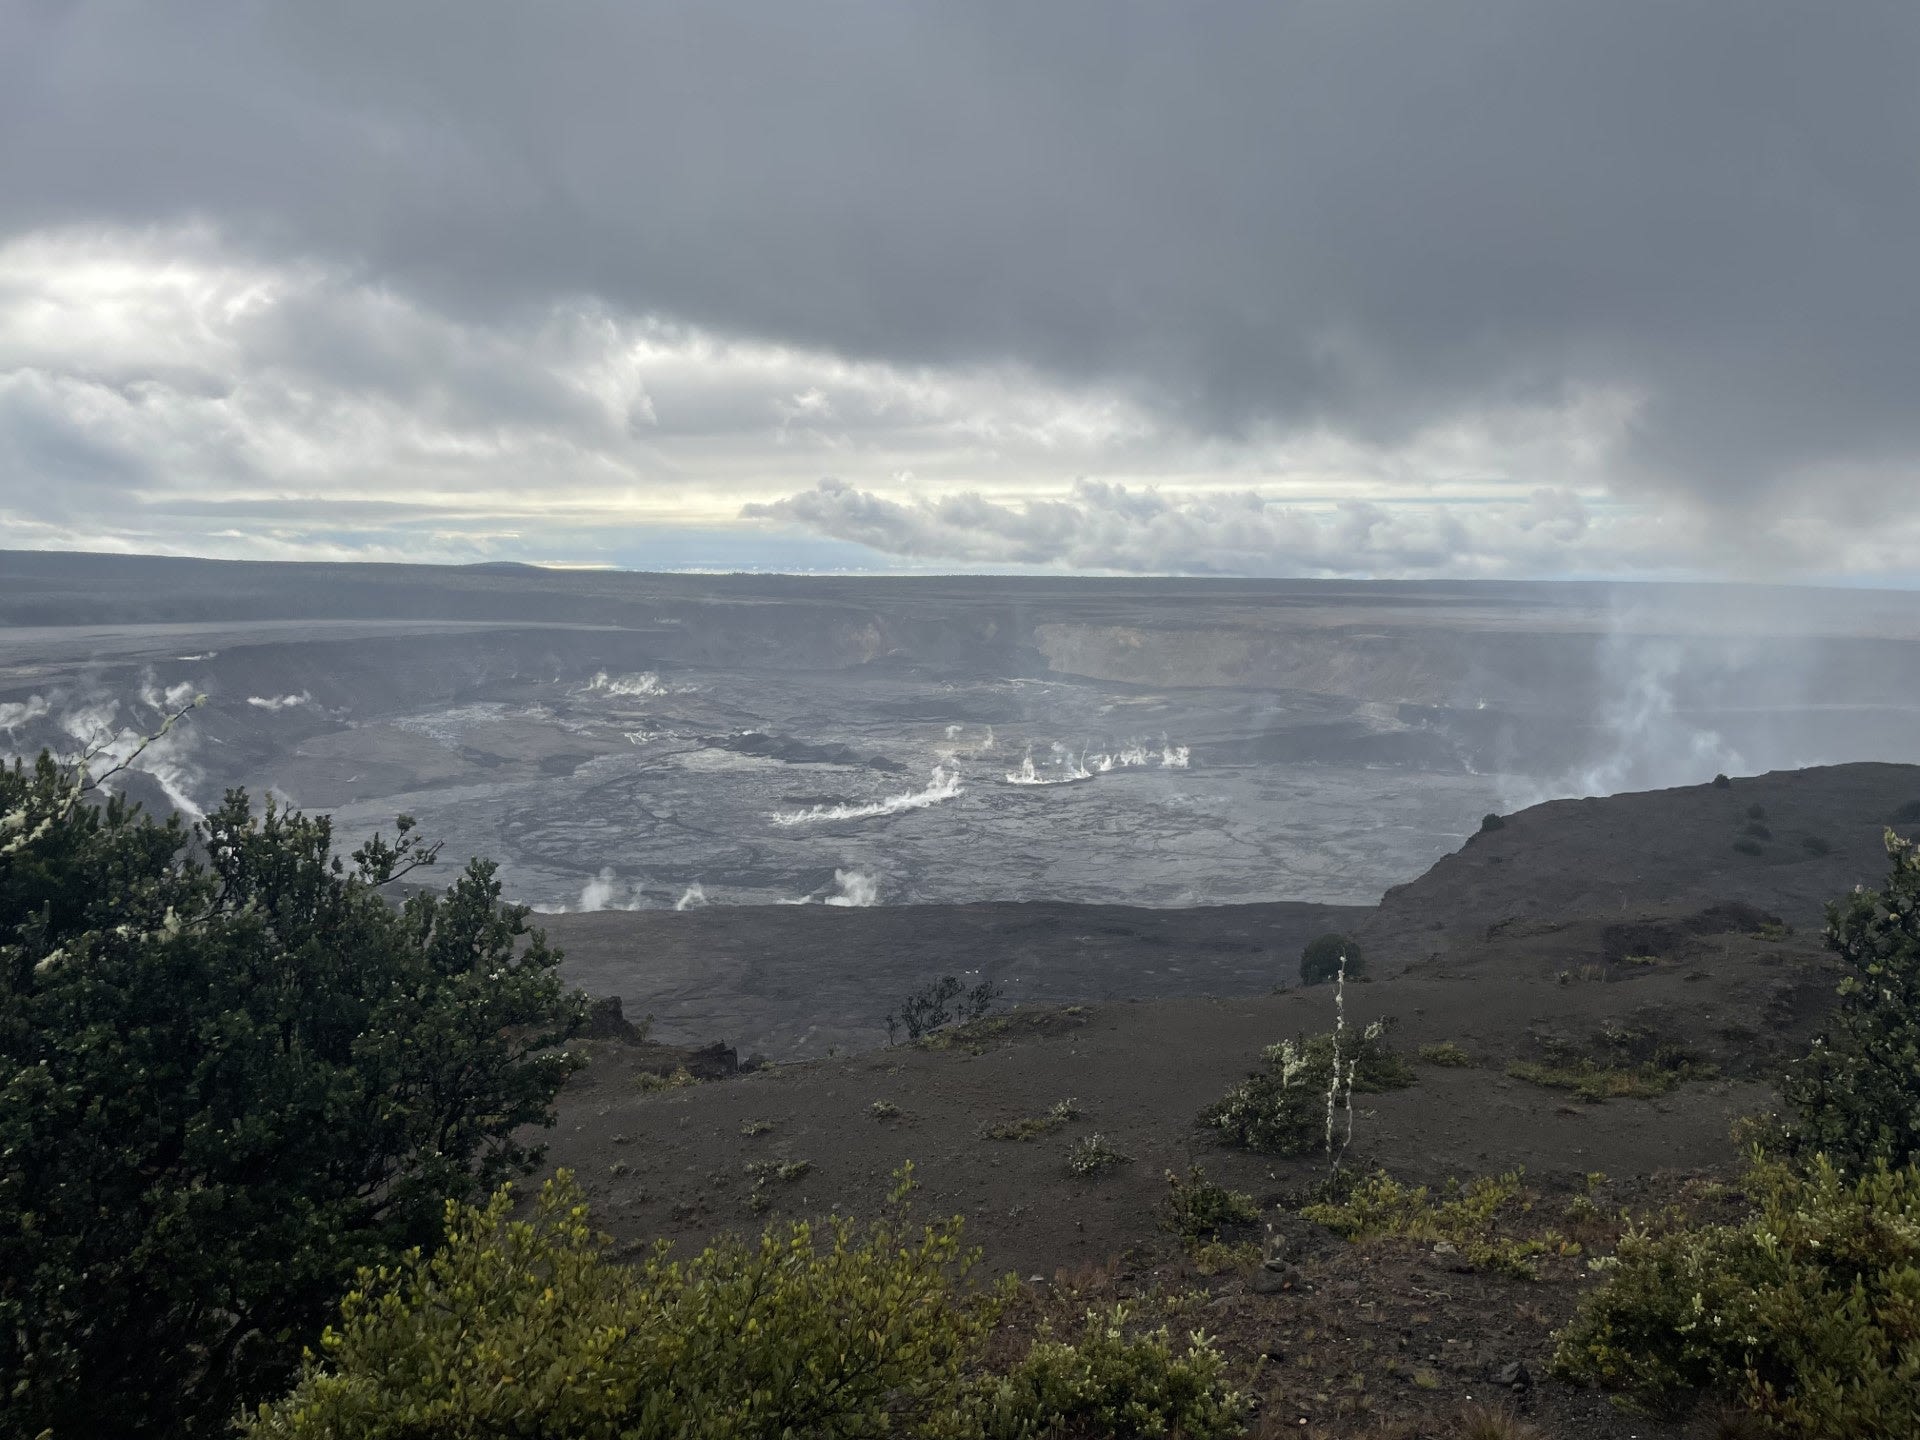 Hawaii's Kilauea volcano rocked by hundreds of earthquakes